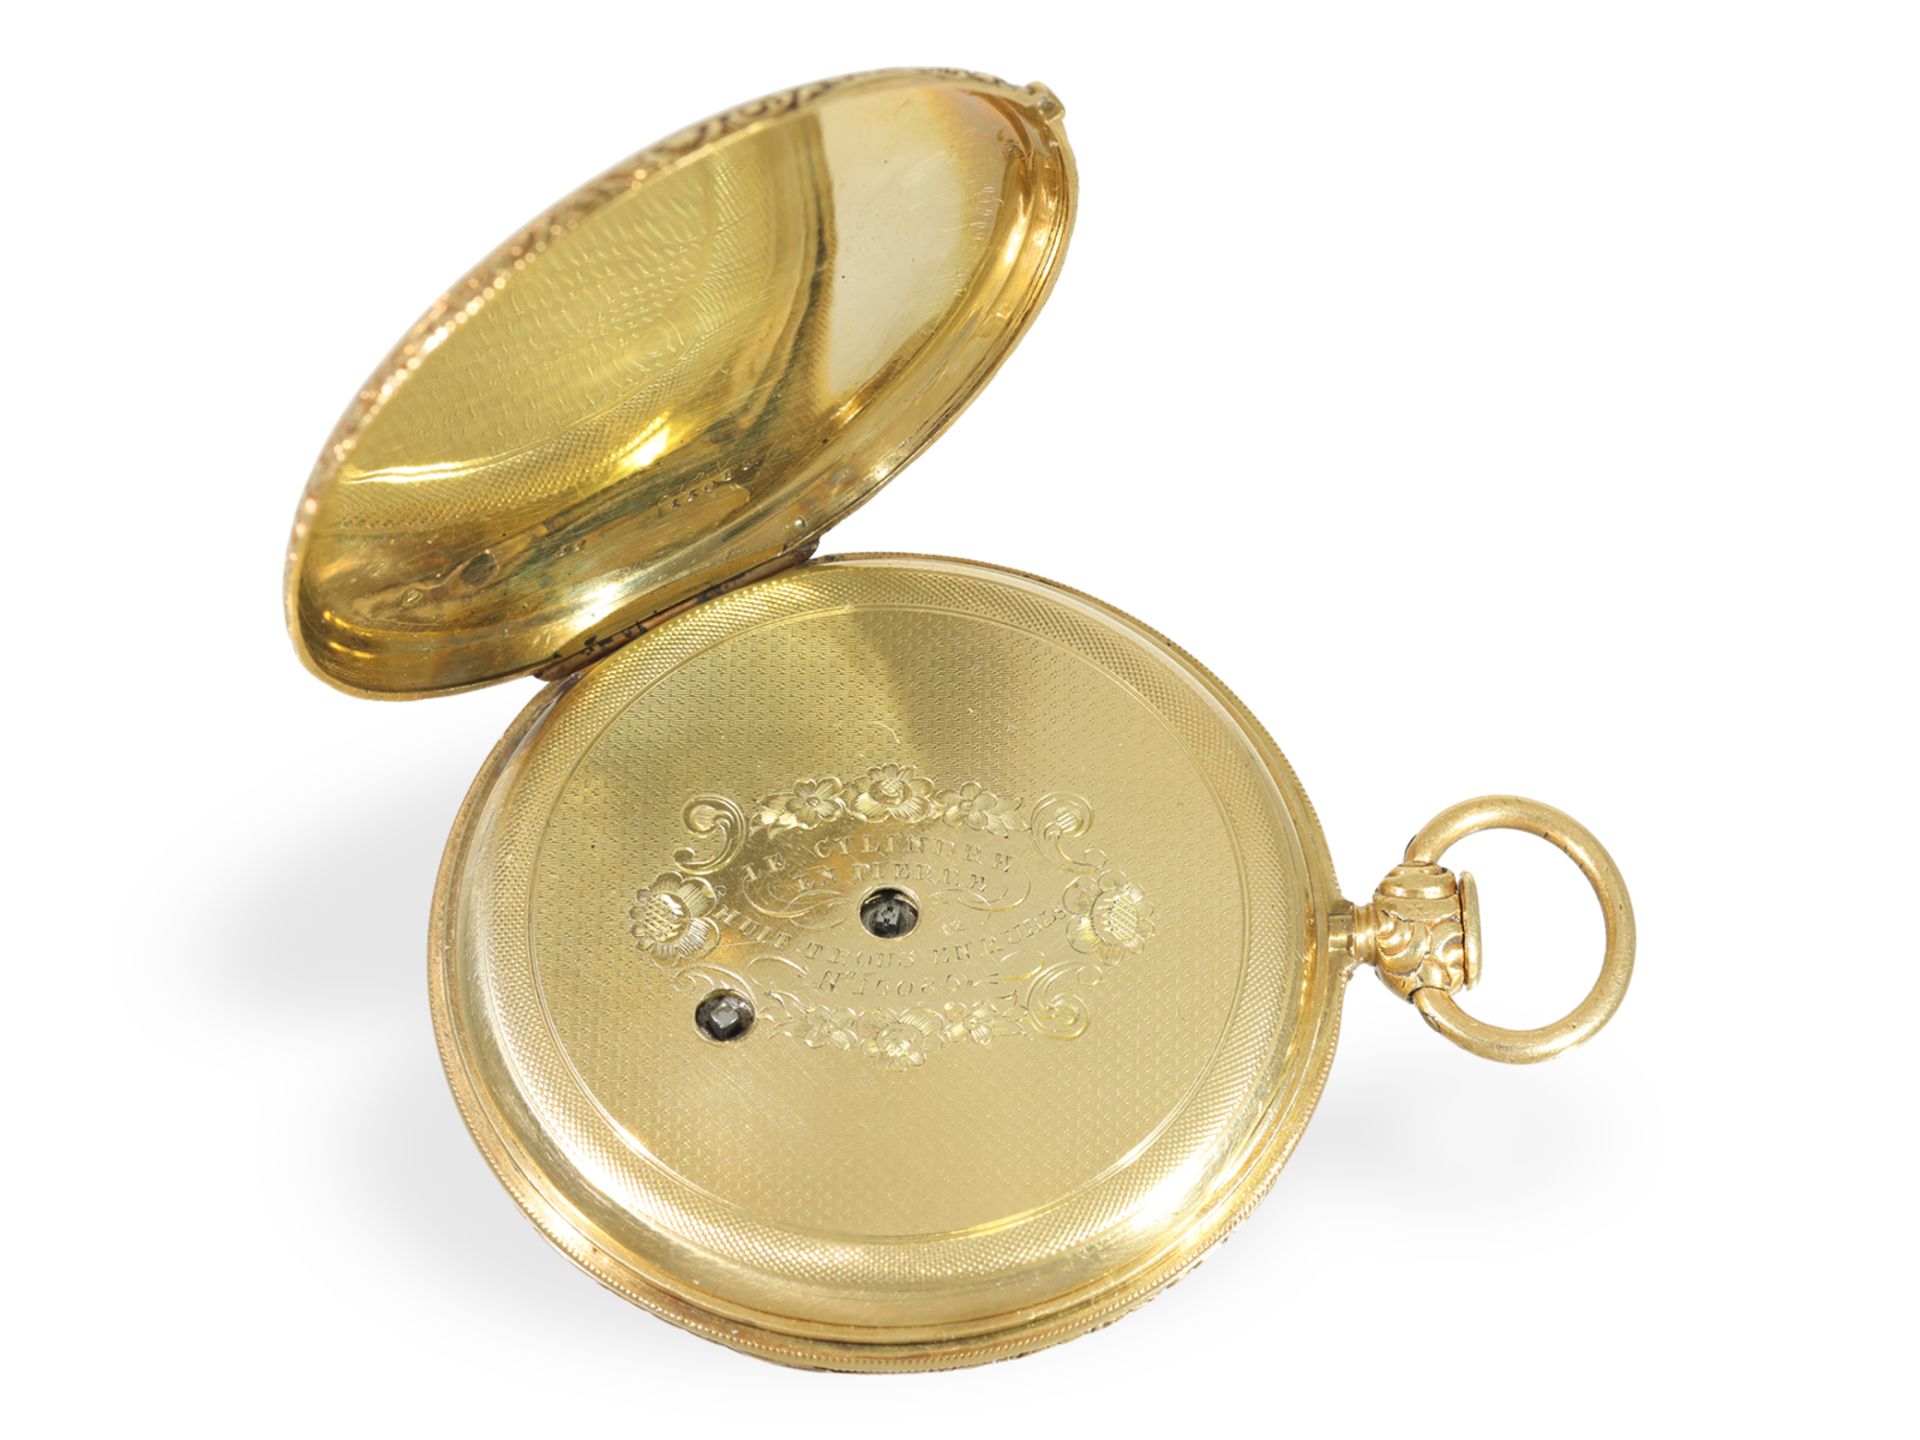 Taschenuhr: prächtige Lepine mit Repetition und goldenem Ratschenschlüssel, ca. 1830 - Bild 3 aus 5